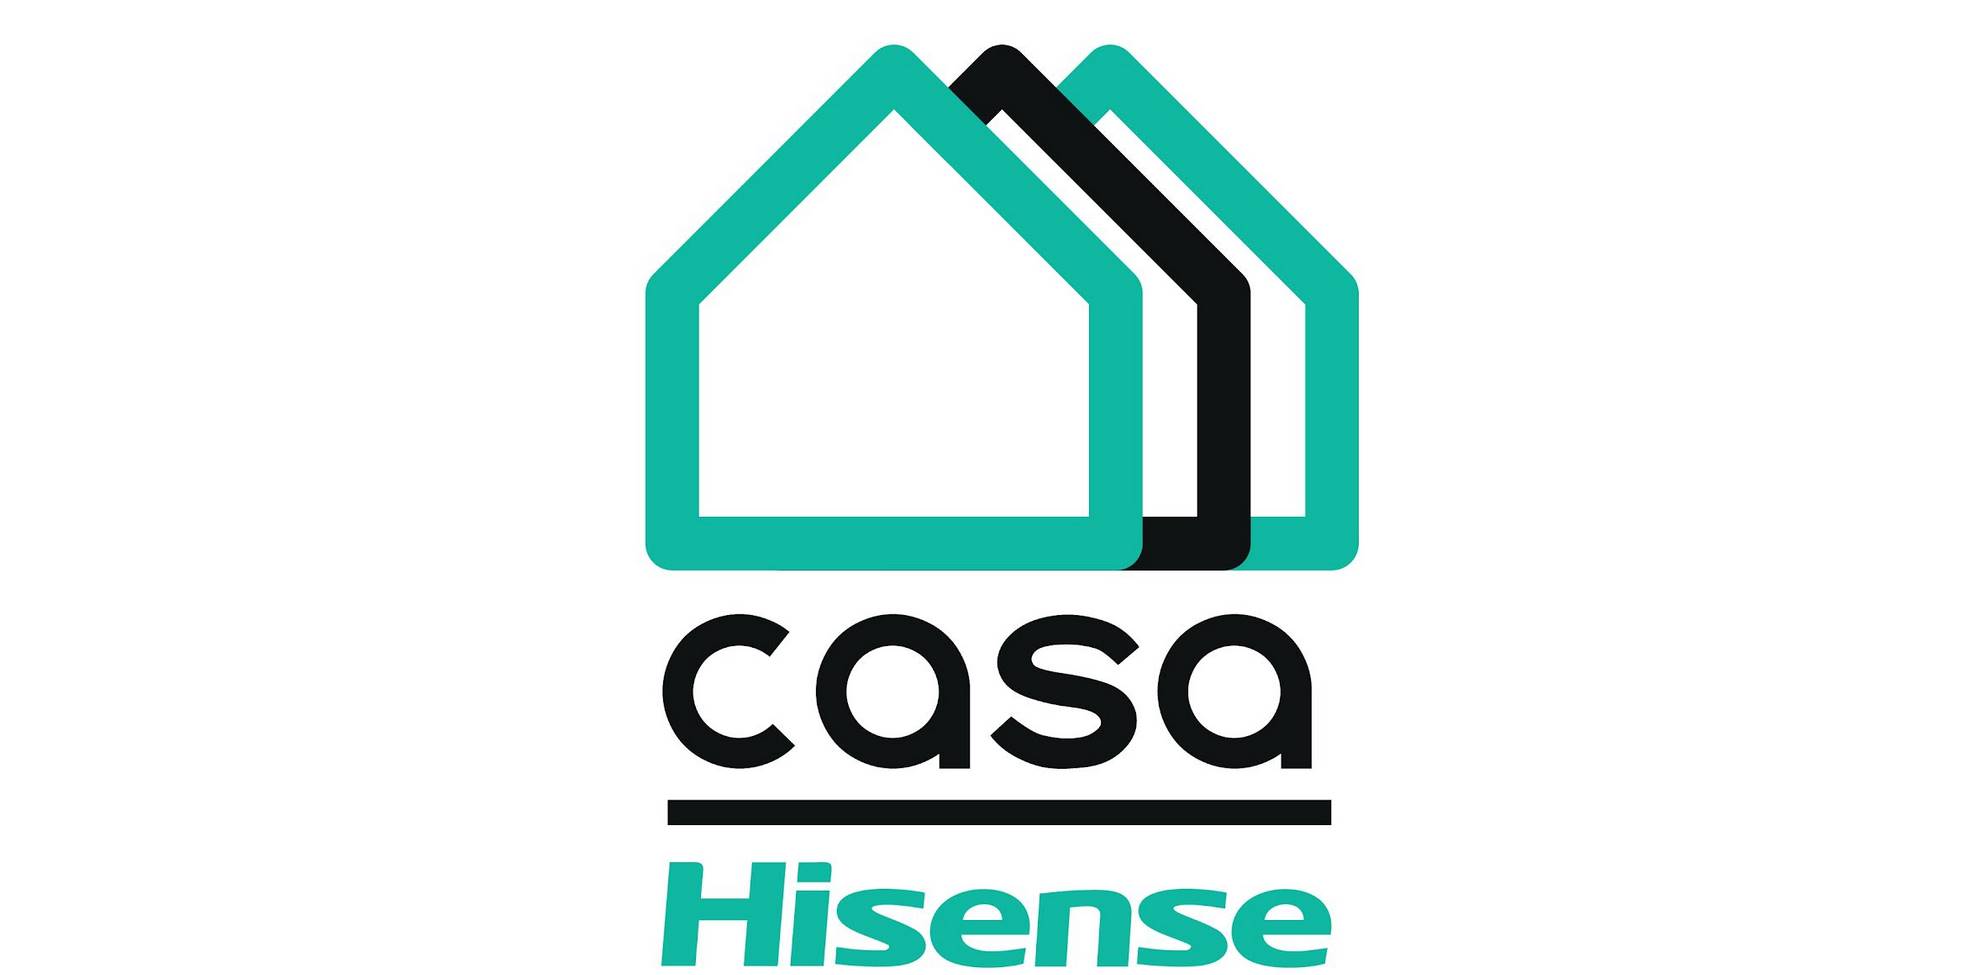 Presenta il progetto Casa Hisense